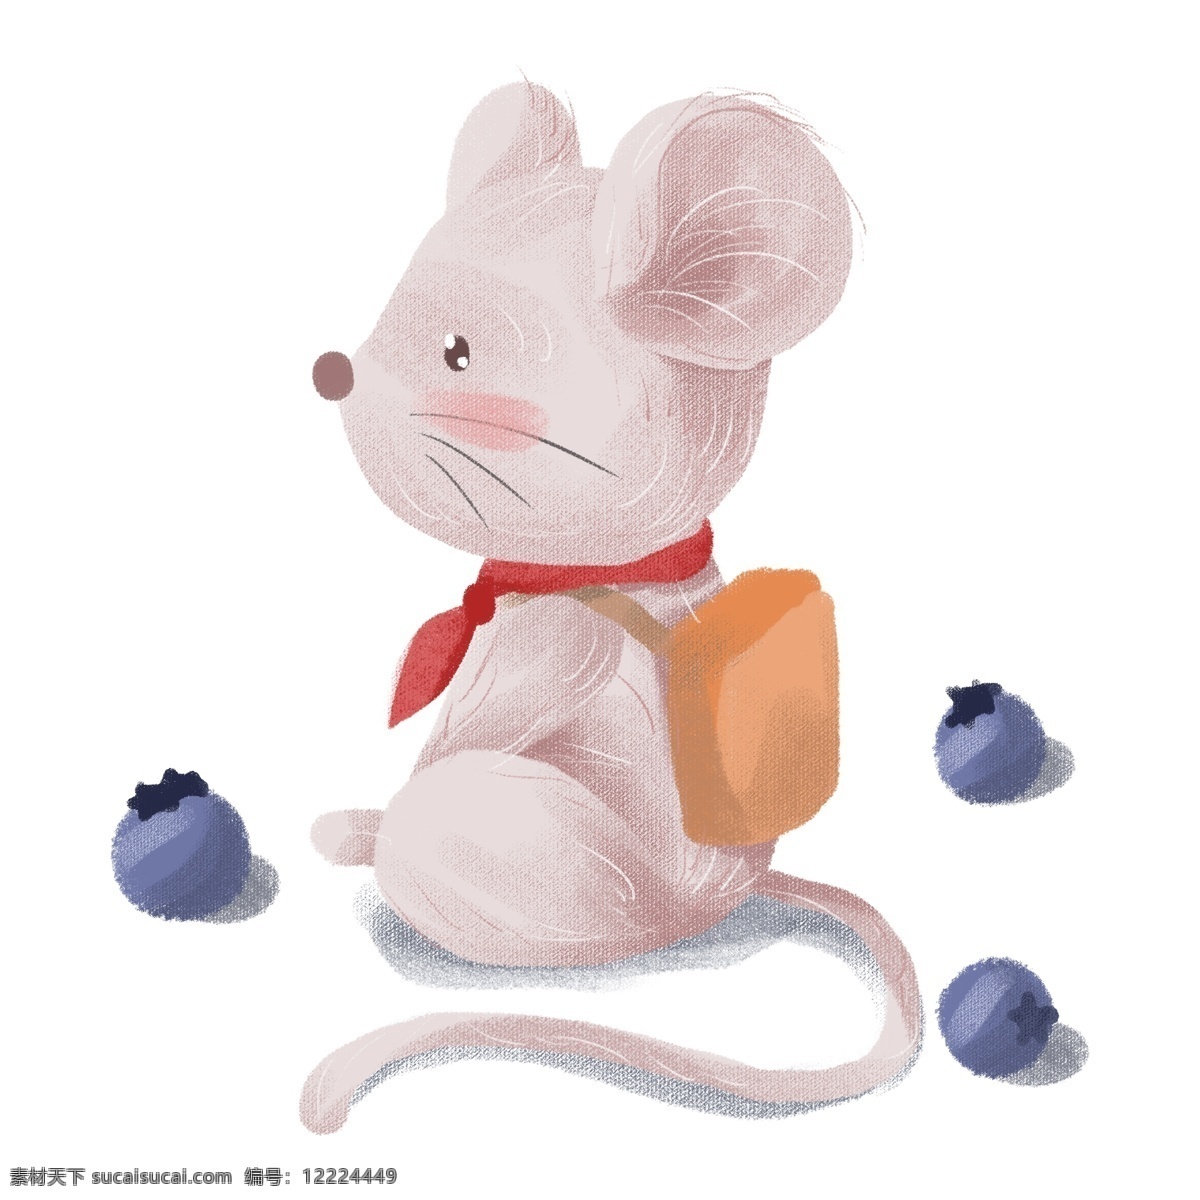 手绘 可爱 卡通 动物 老鼠 背书 包带 红领巾 蓝莓 拟人 背书包 带红领巾 仓鼠